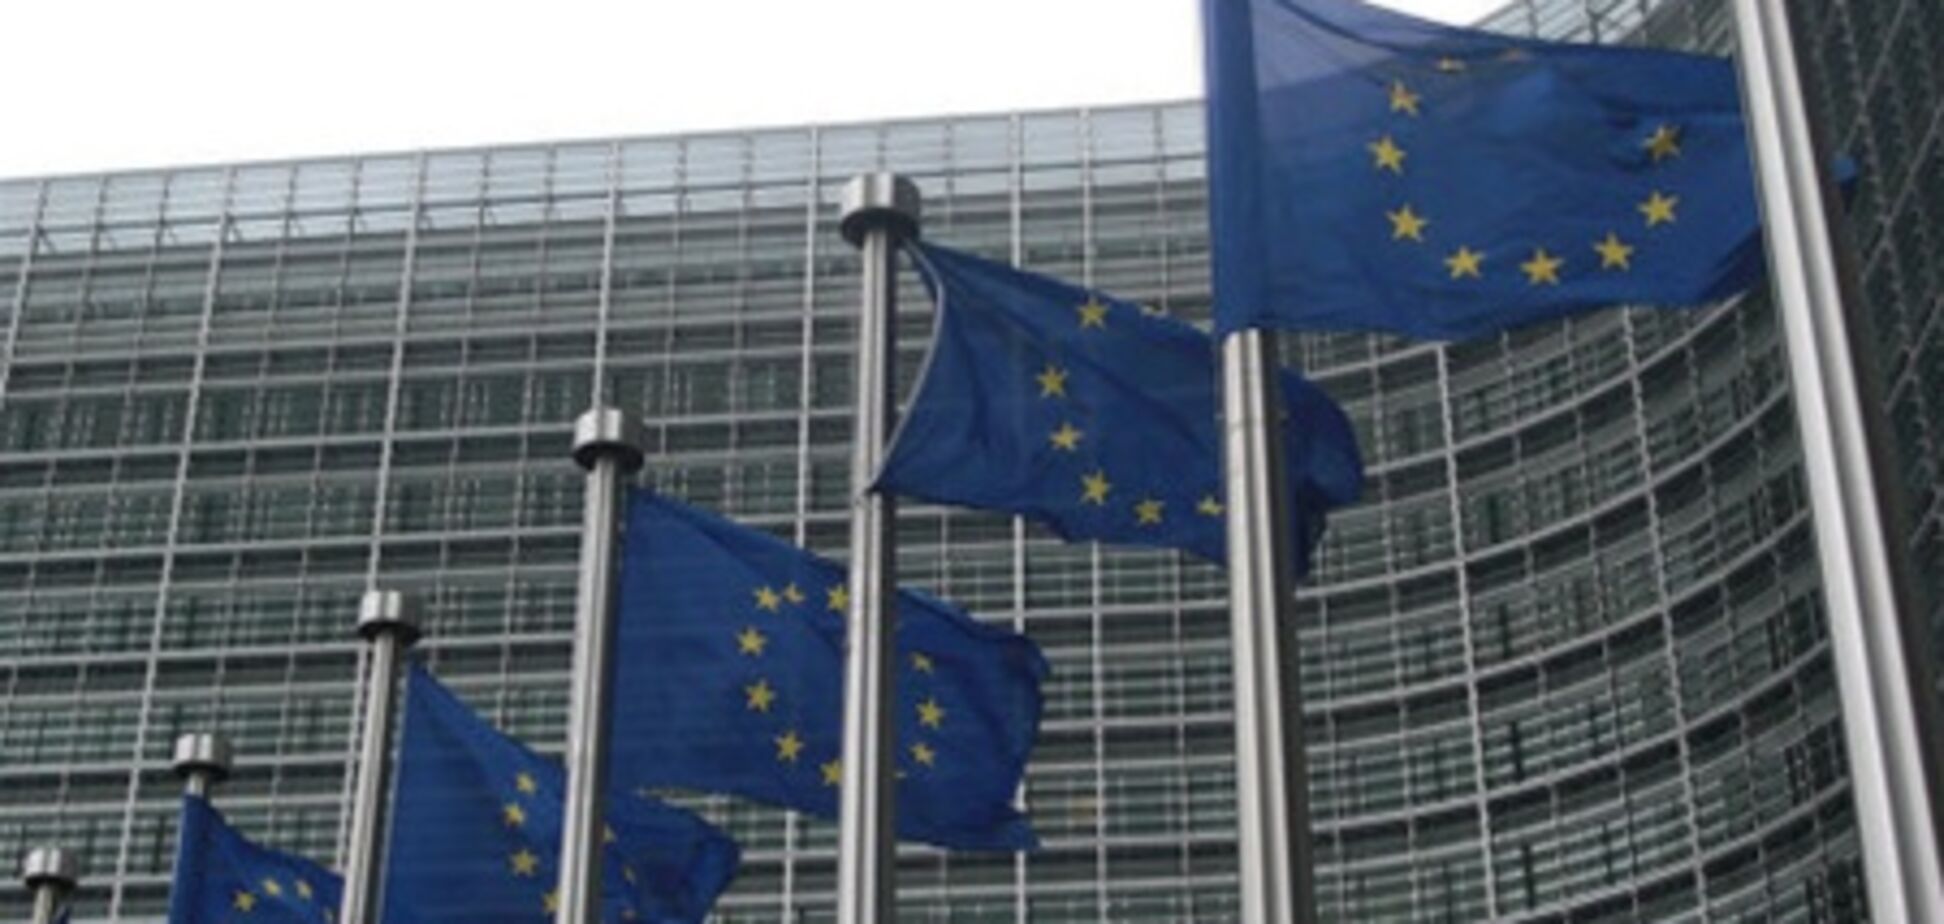 Брюссель оценит евроинтеграционные успехи Киева 15 мая - СМИ